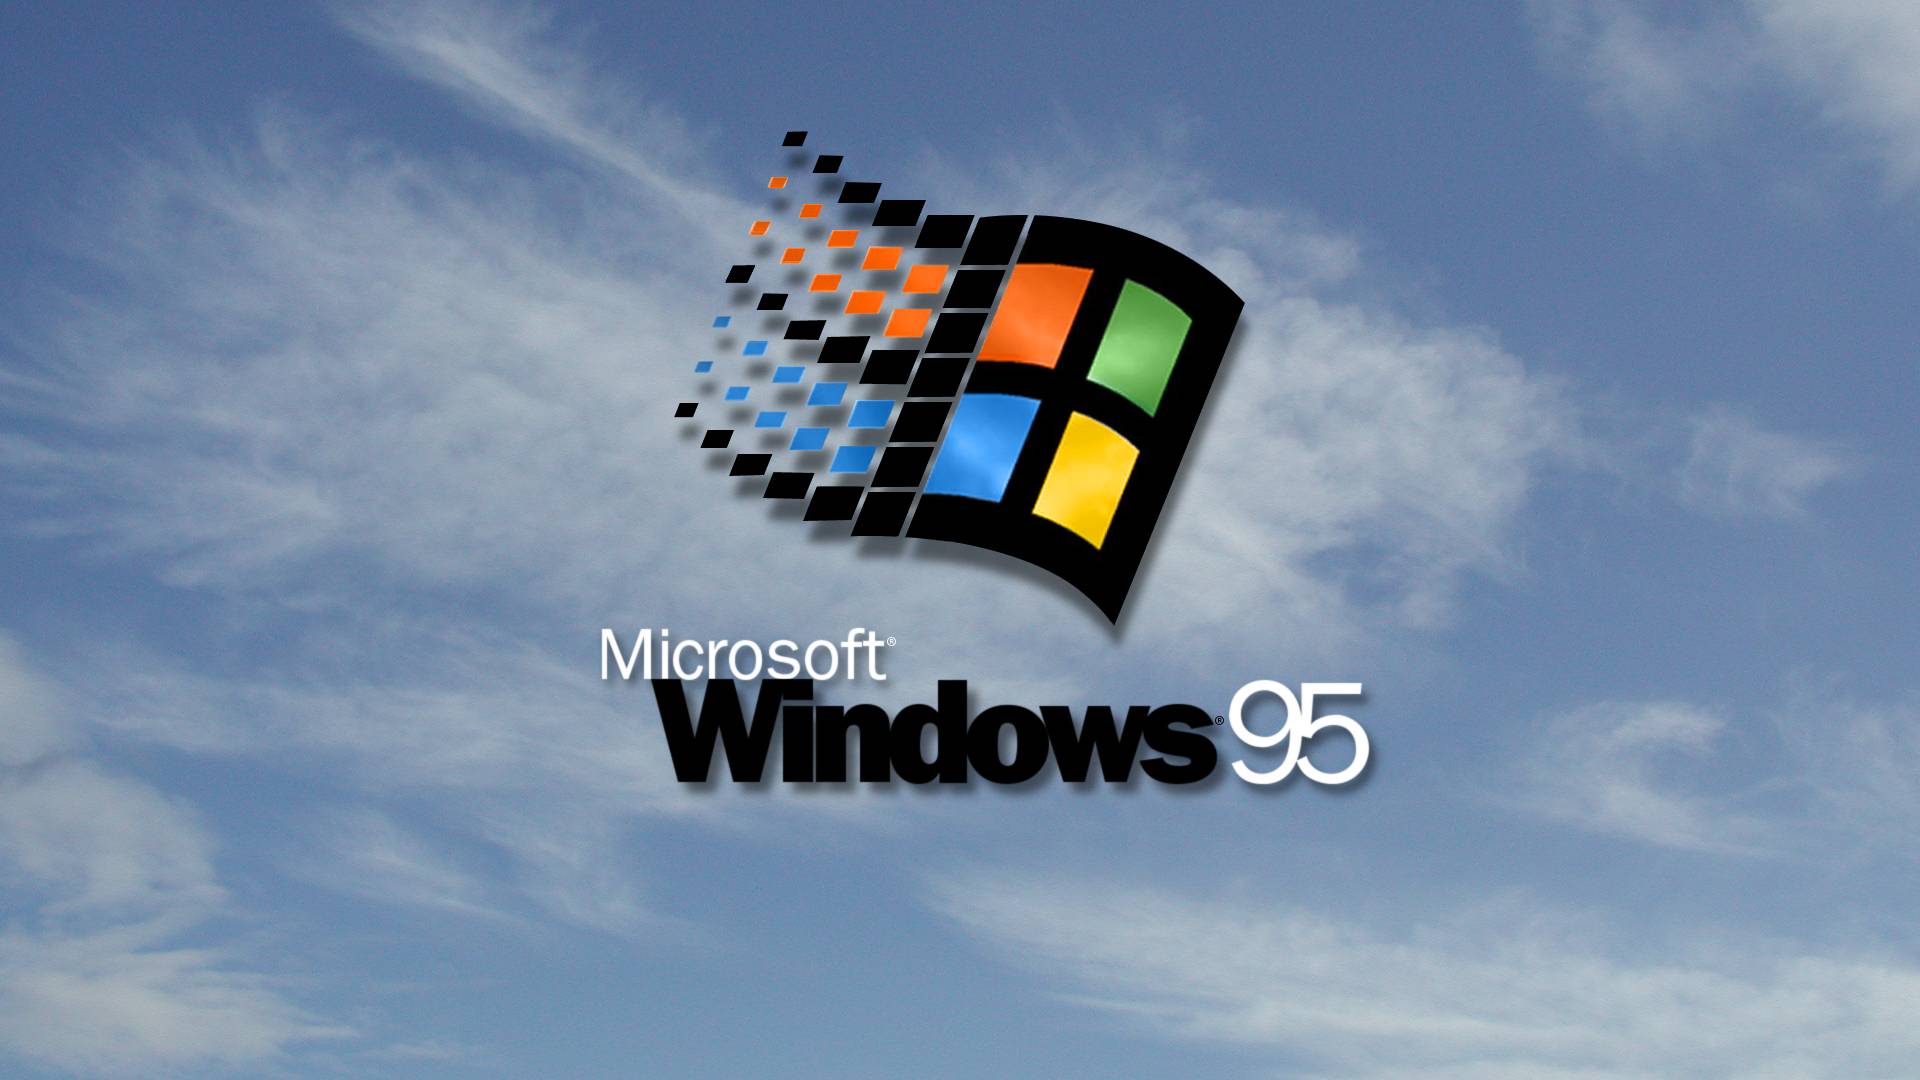 Windows 95 HD Wallpaper 1920x1080 ID47810